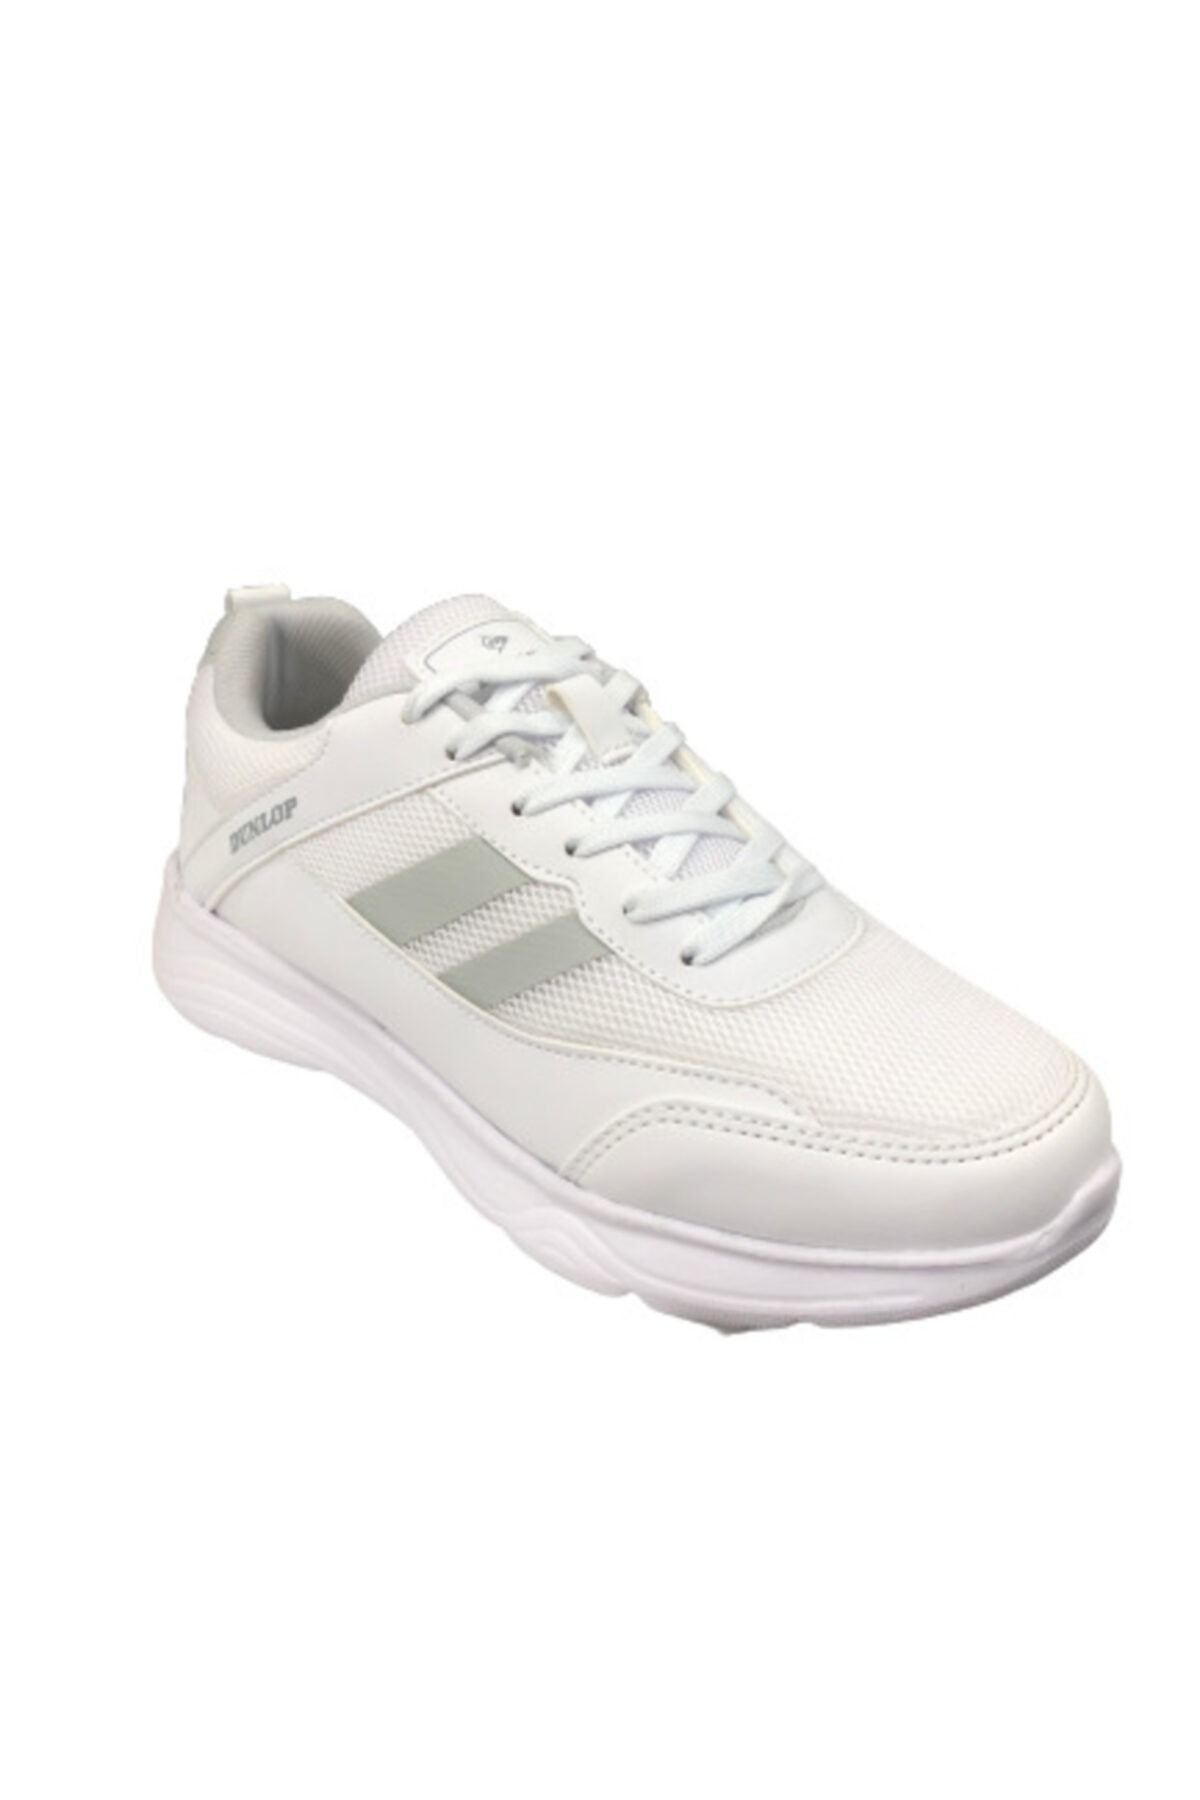 Dunlop Beyaz Günlük Spor Ayakkabı